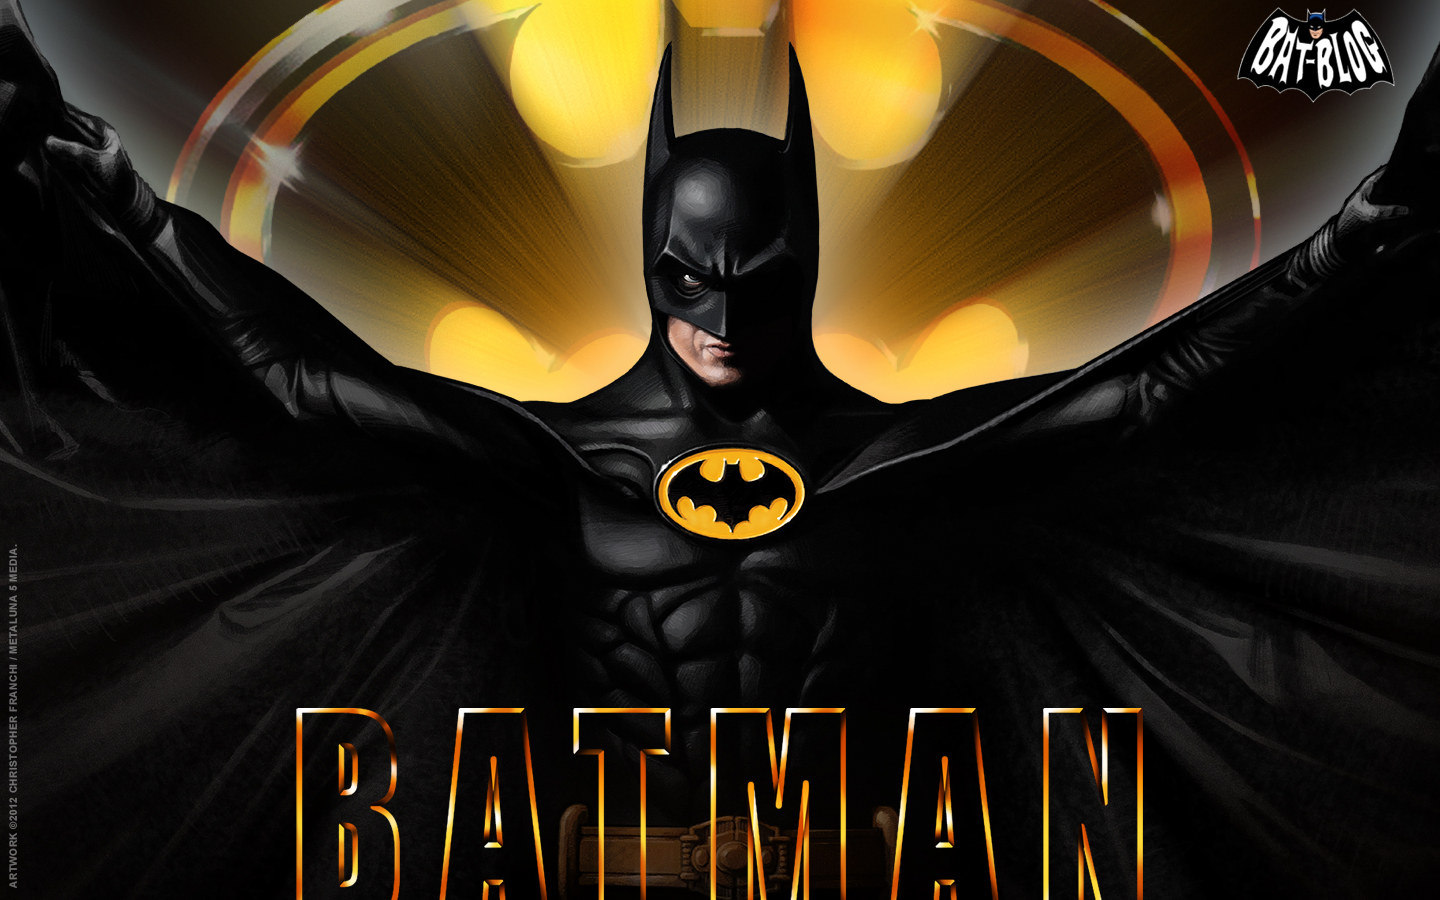 72+] Batman Movie Wallpaper - WallpaperSafari